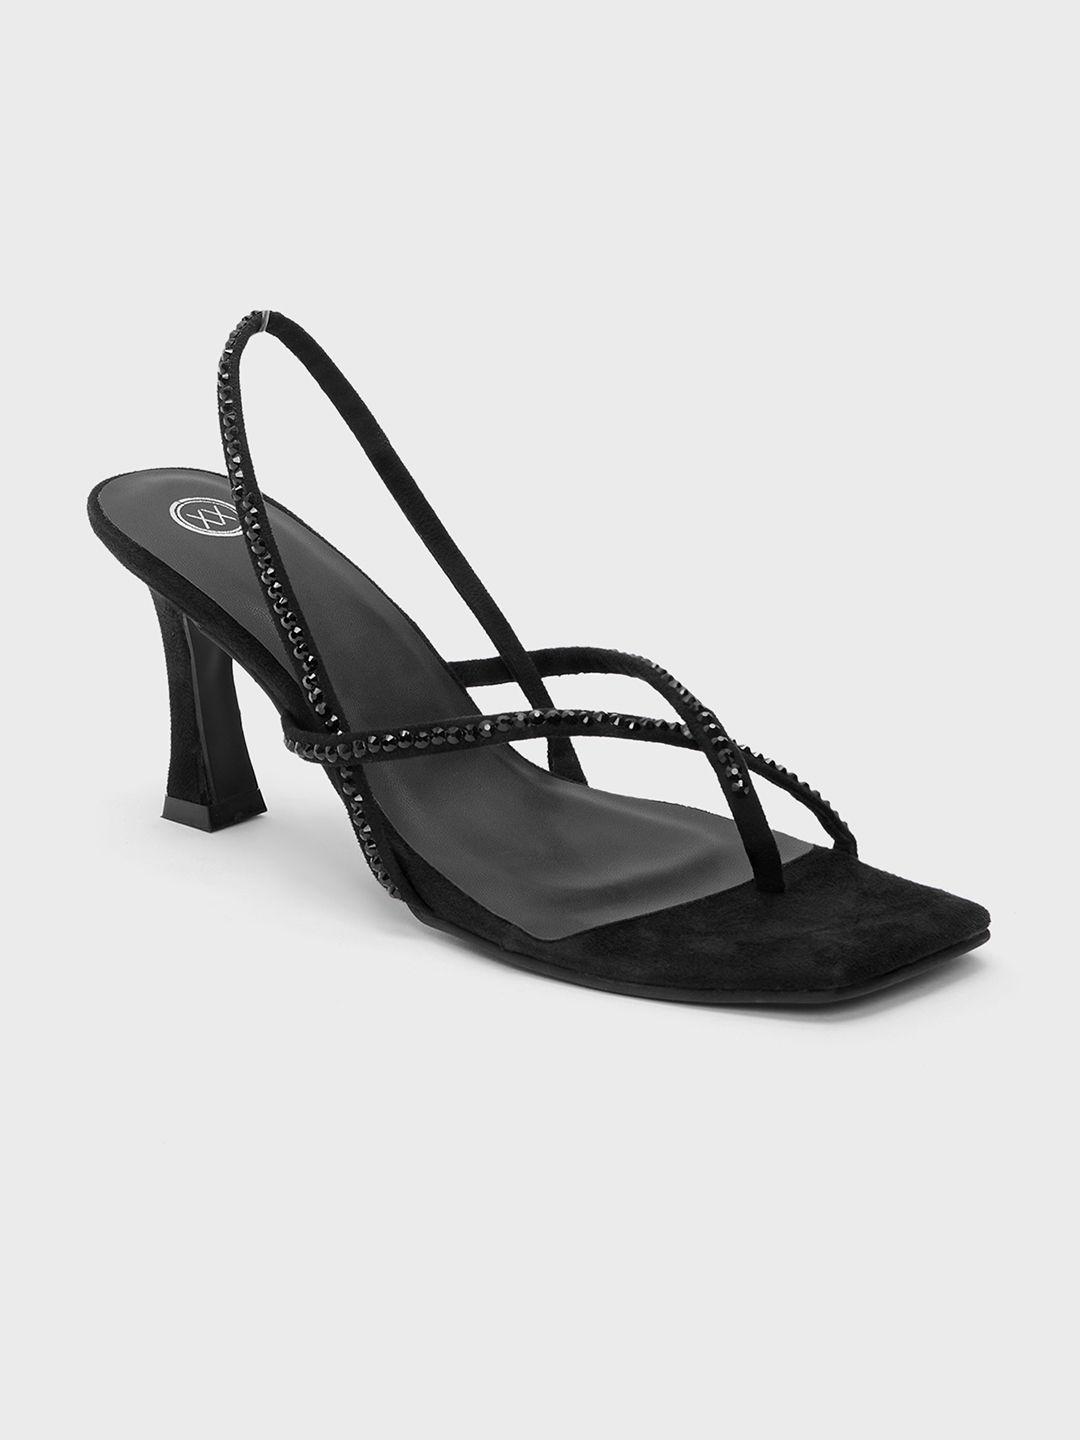 20dresses black rhinestone embellished suede slim heels